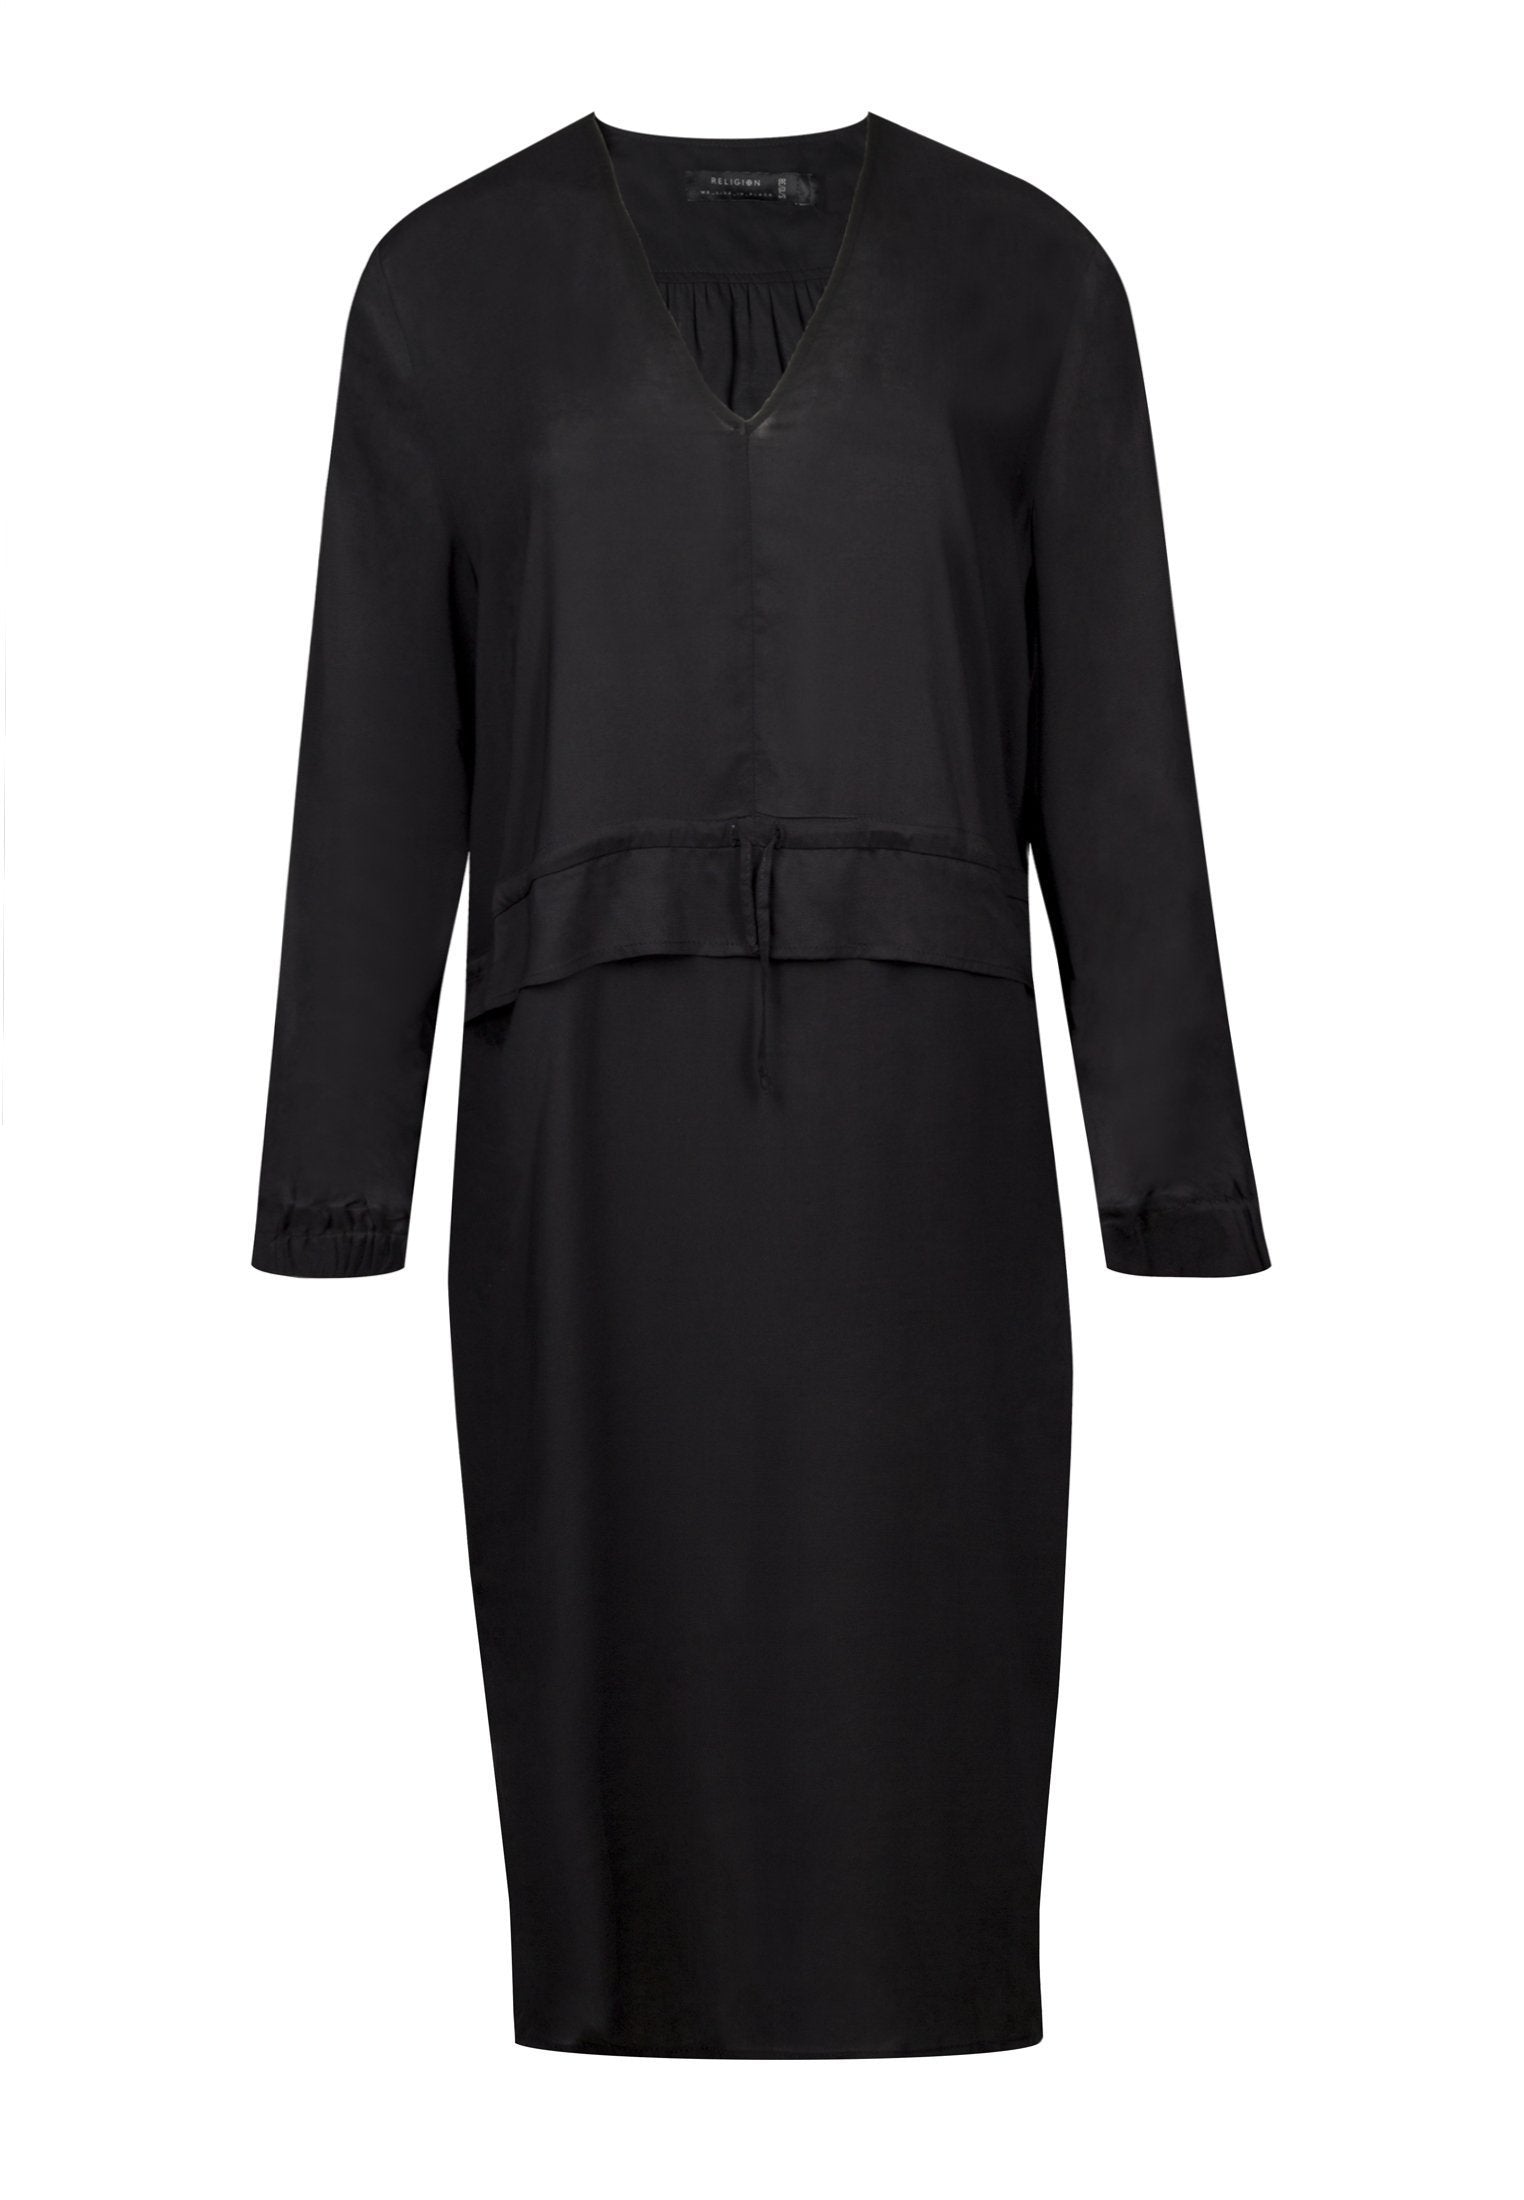 RELIGION Lively Black Dress